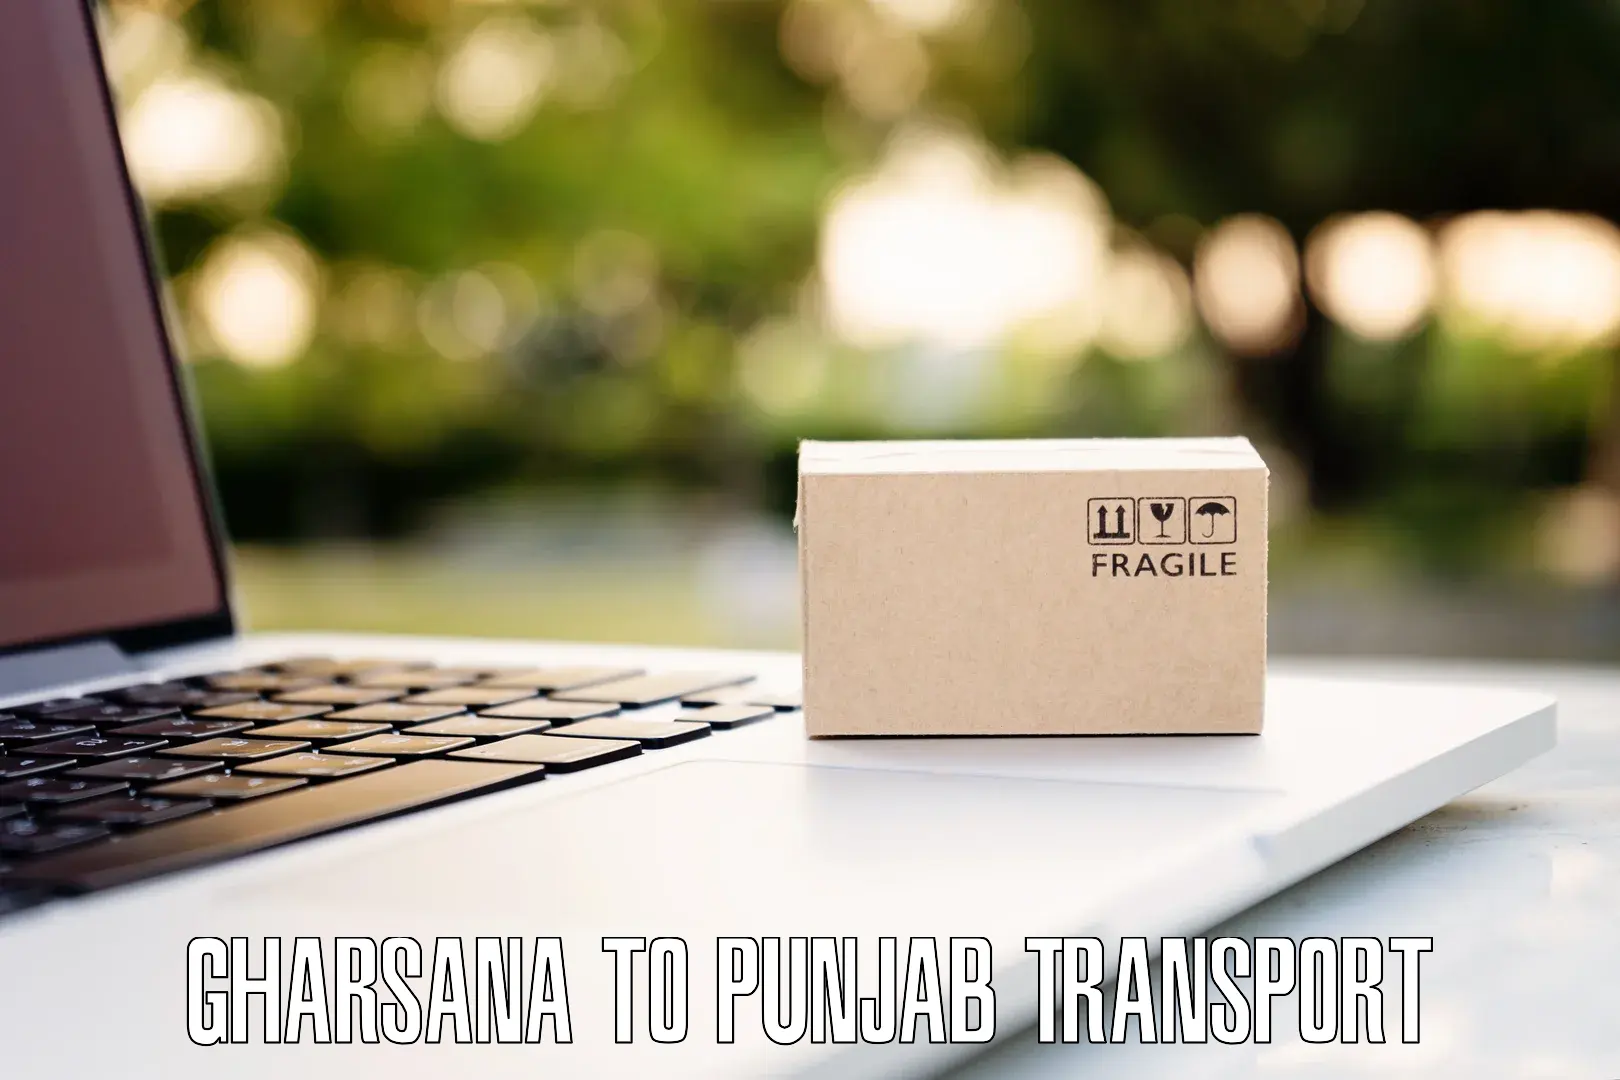 Daily parcel service transport Gharsana to Bhadaur